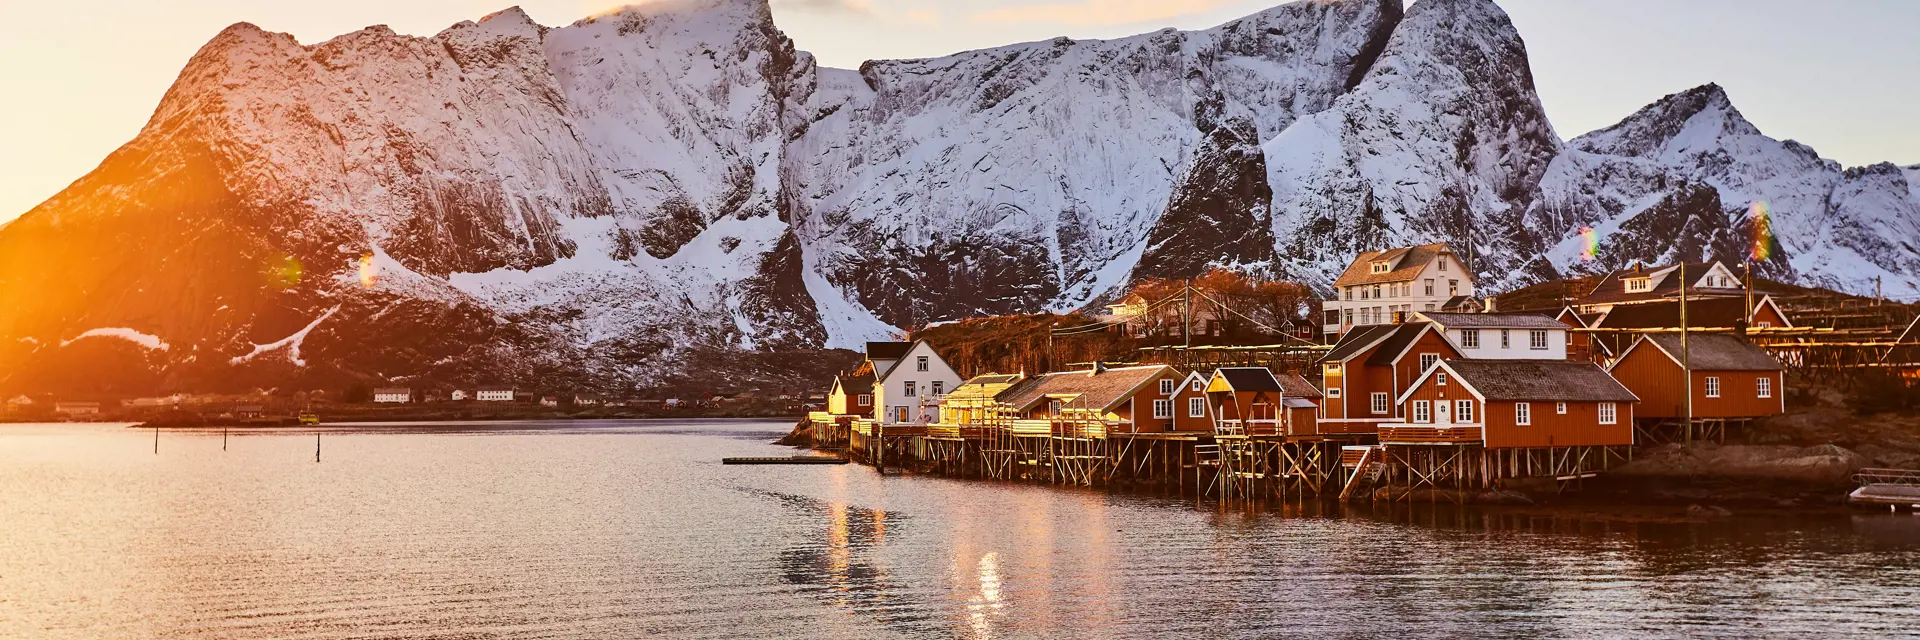 Op incentive naar de Lofoten in Noorwegen 